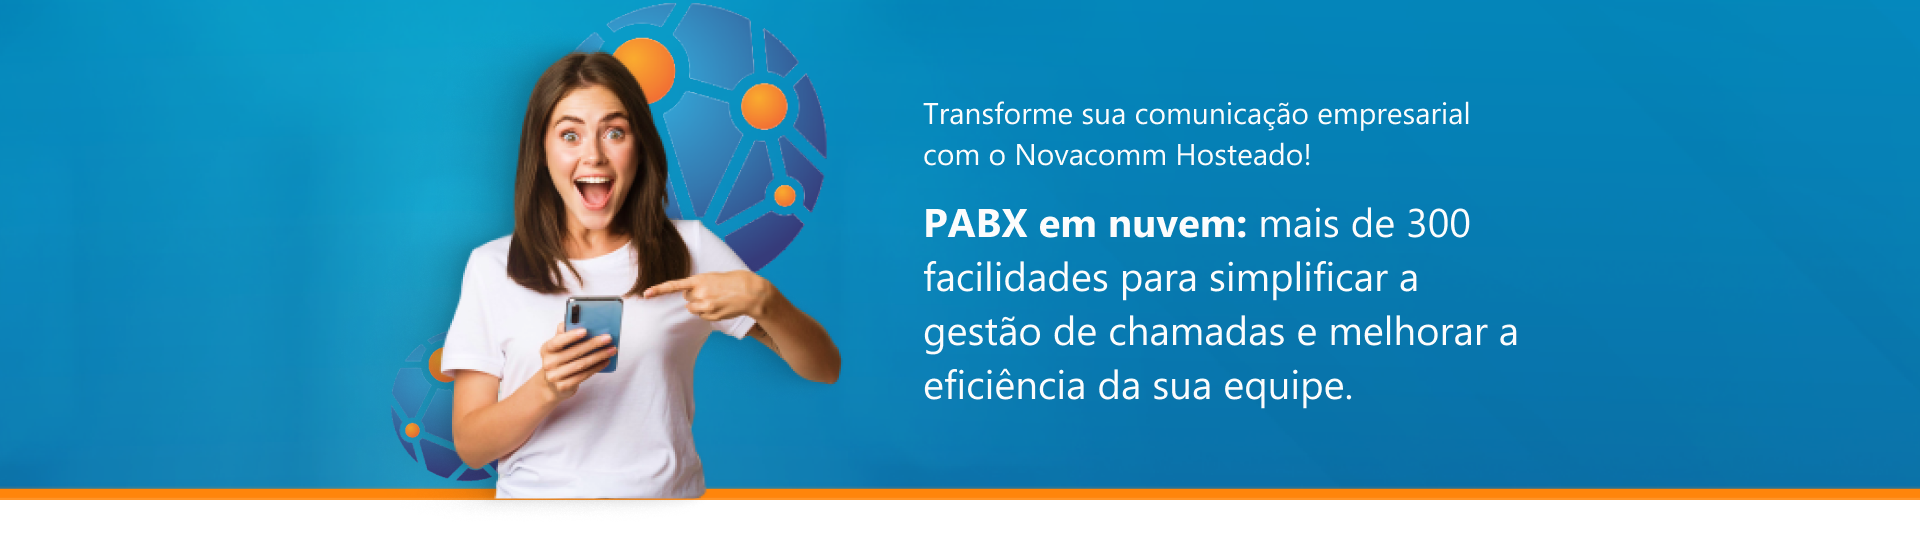 PABX em nubem: mais de 300 facilidades para simplificar a gestão de chamadas e melhorar a eficiência da sua equipe